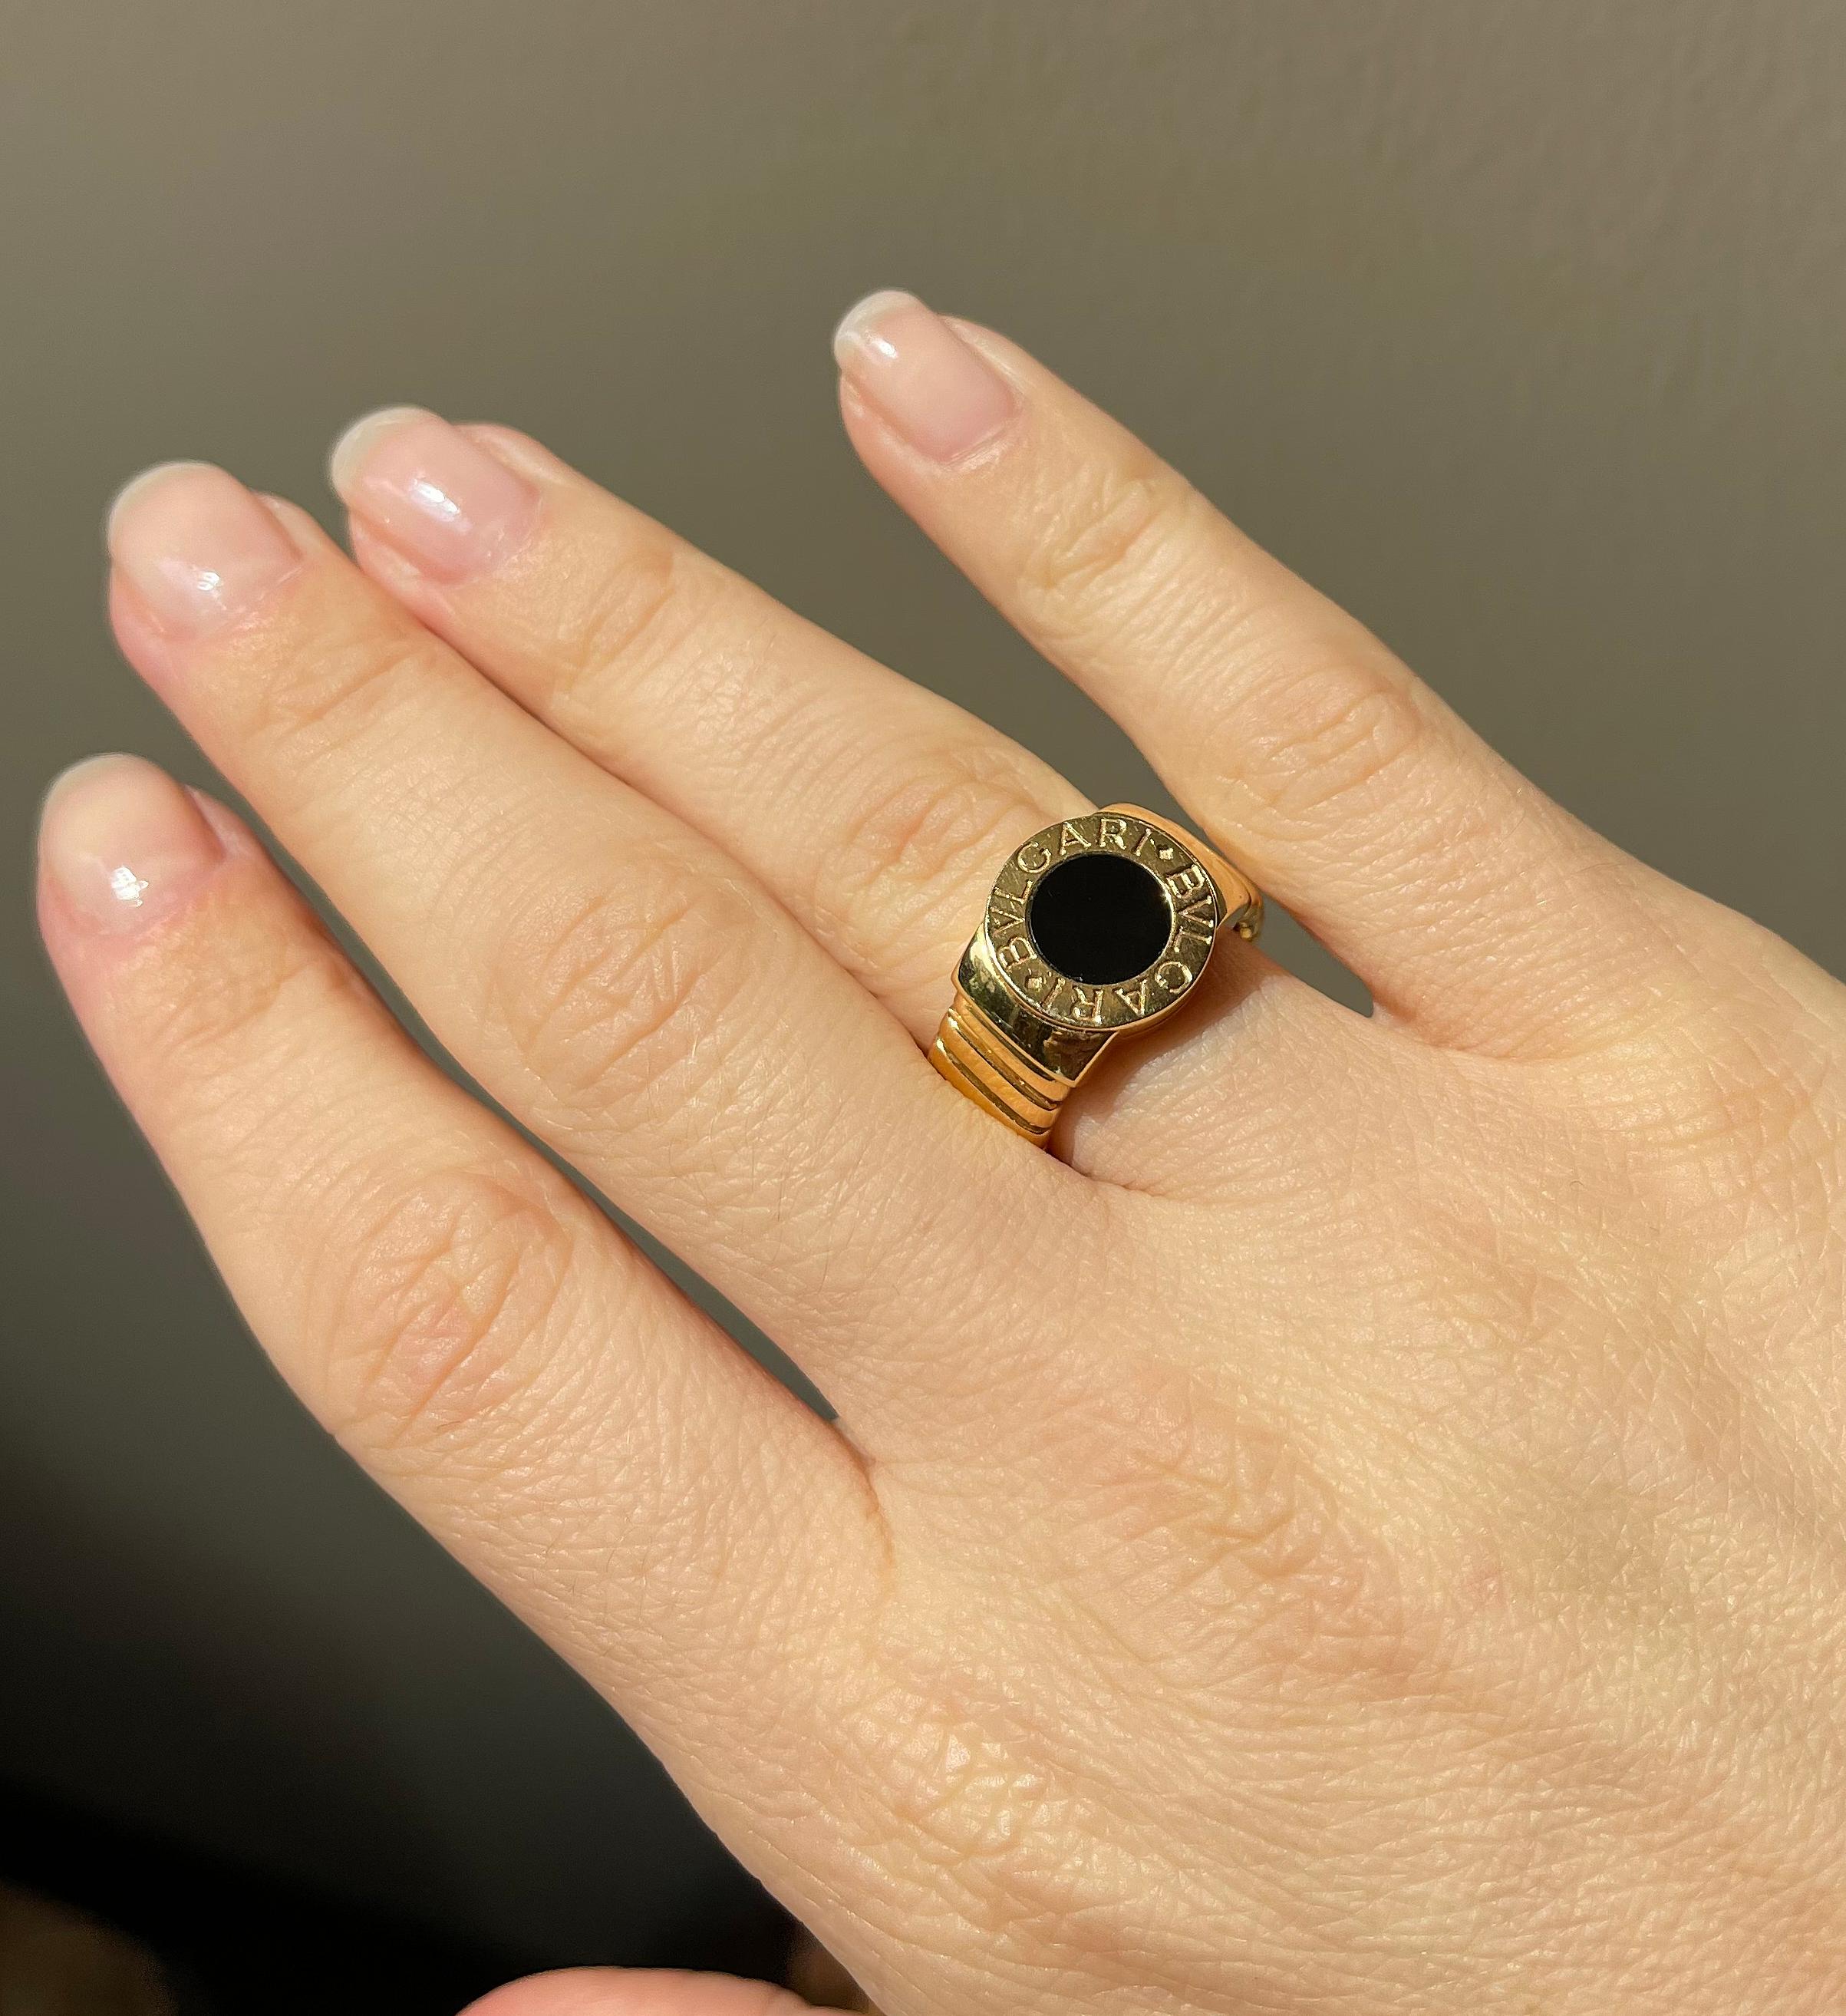 Klassischer Tubogas-Ring aus 18 Karat Gold von Bvlgari, mit Onyxaufsatz. Der Ring hat eine offene Rückseite und ist in der Größe leicht flexibel. Die Ringspitze hat einen Durchmesser von 0,5